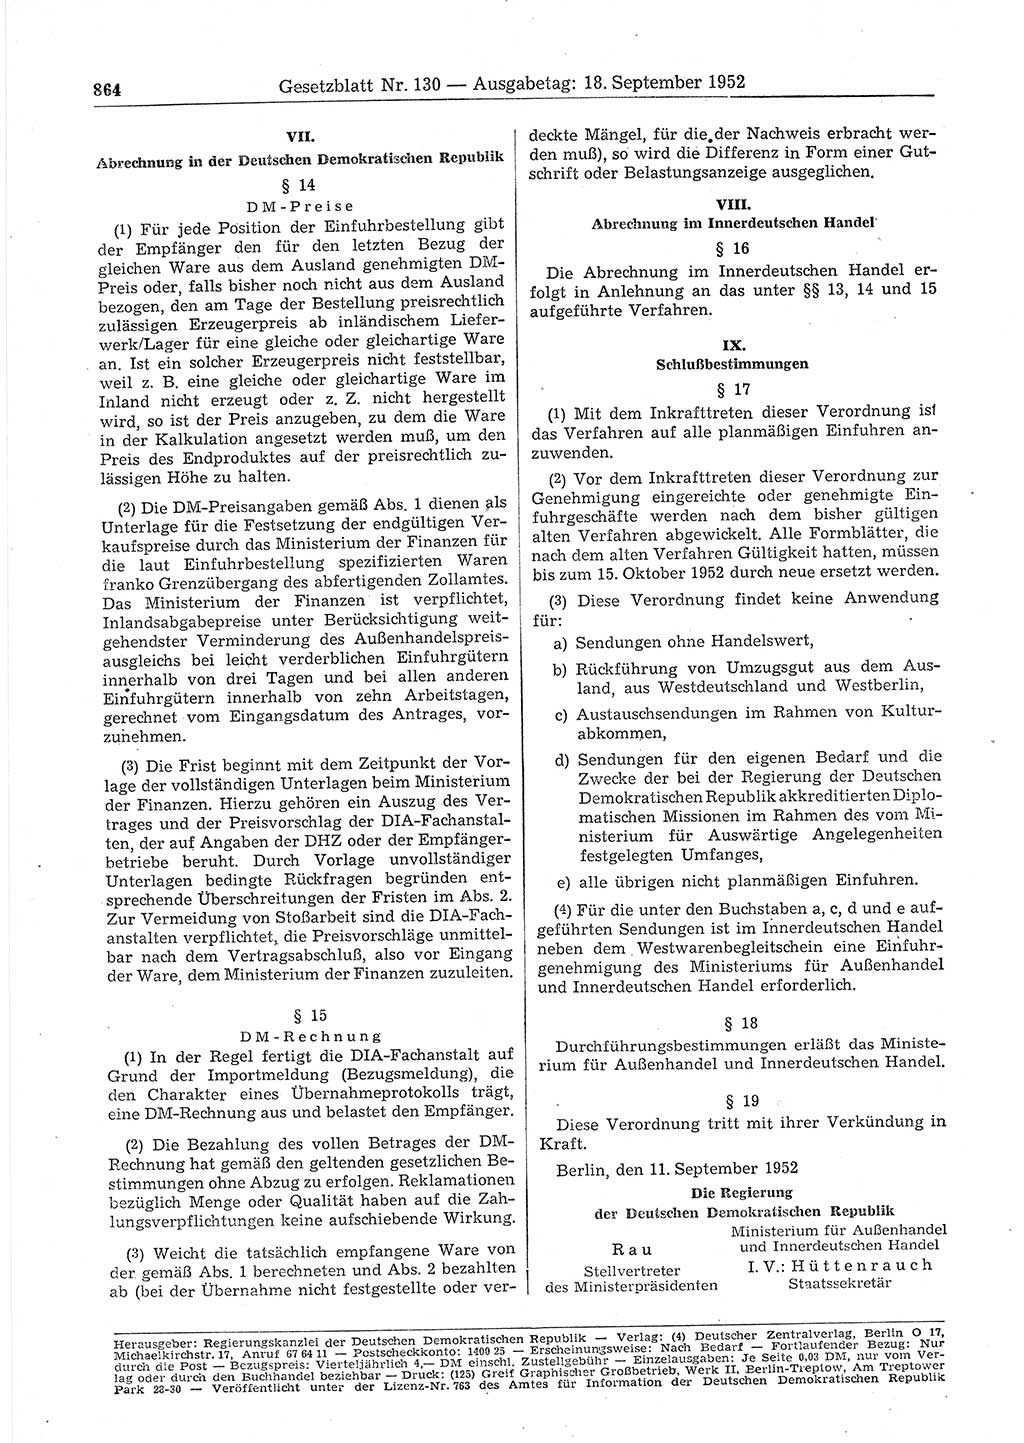 Gesetzblatt (GBl.) der Deutschen Demokratischen Republik (DDR) 1952, Seite 864 (GBl. DDR 1952, S. 864)